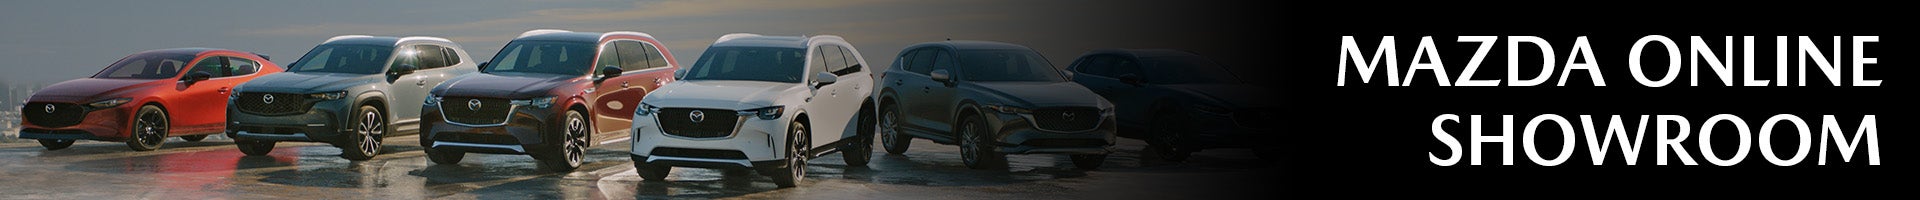 Explore Mazda Models